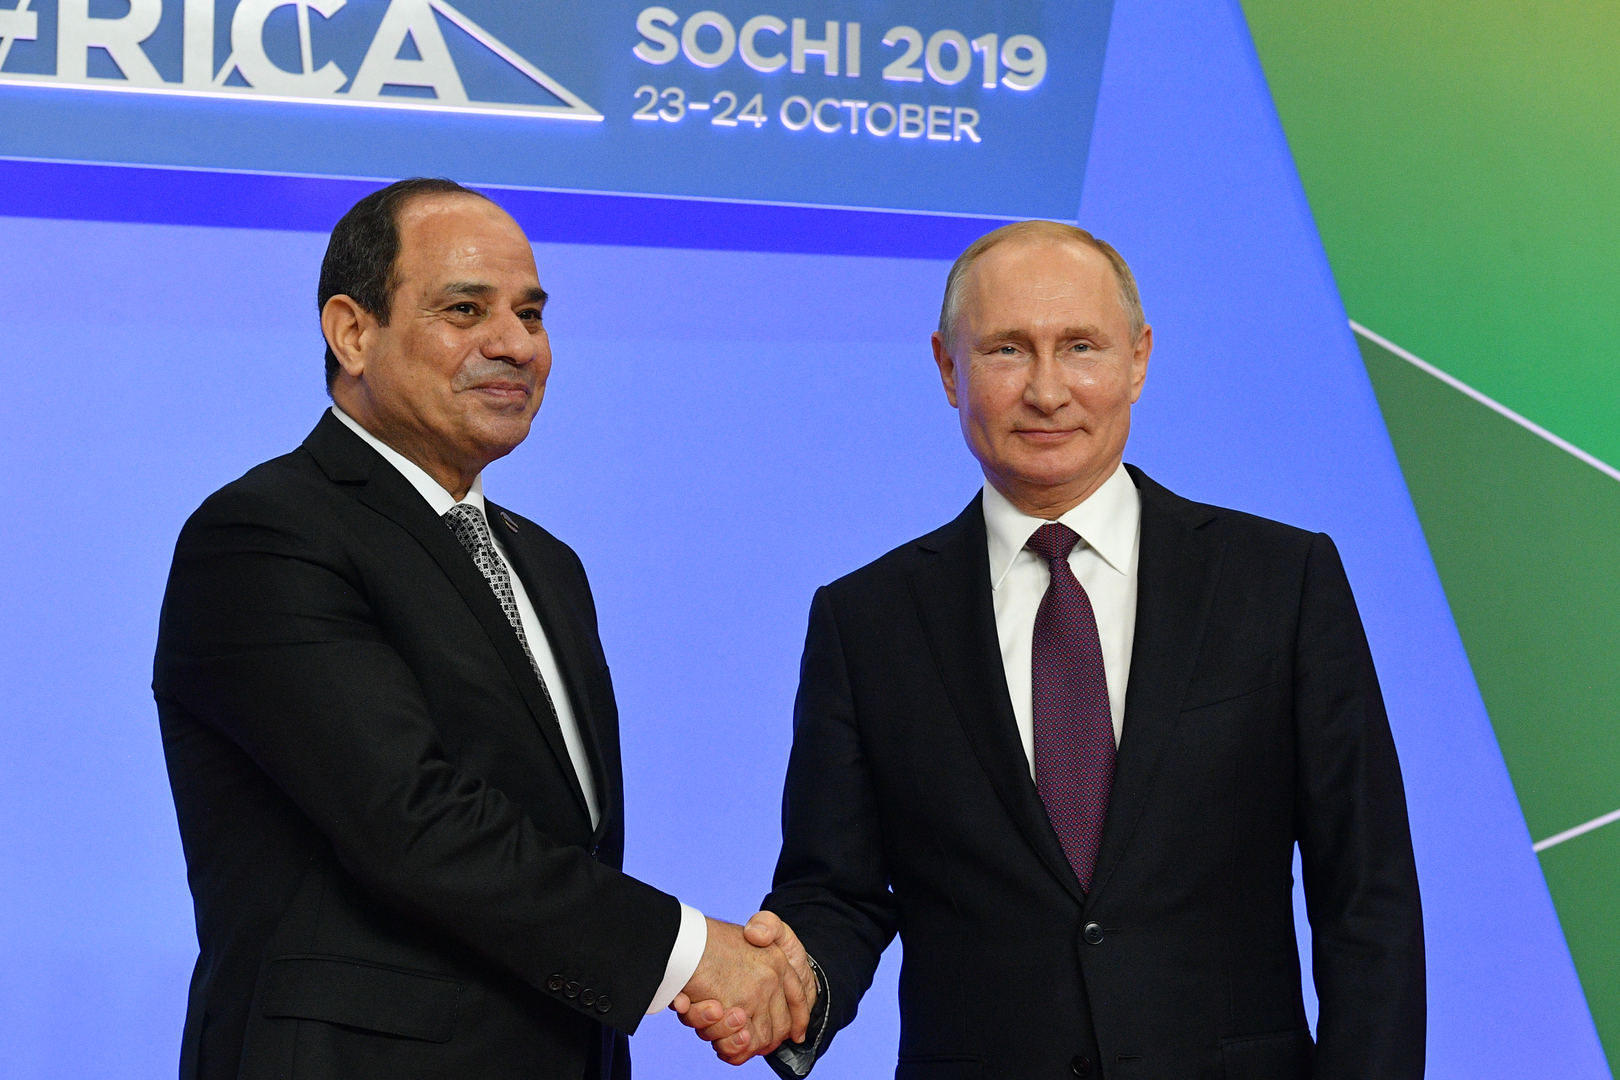 الرئاسة المصرية: السيسي وبوتين يتوافقان على أهمية تكثيف الجهود حول ليبيا -  RT Arabic